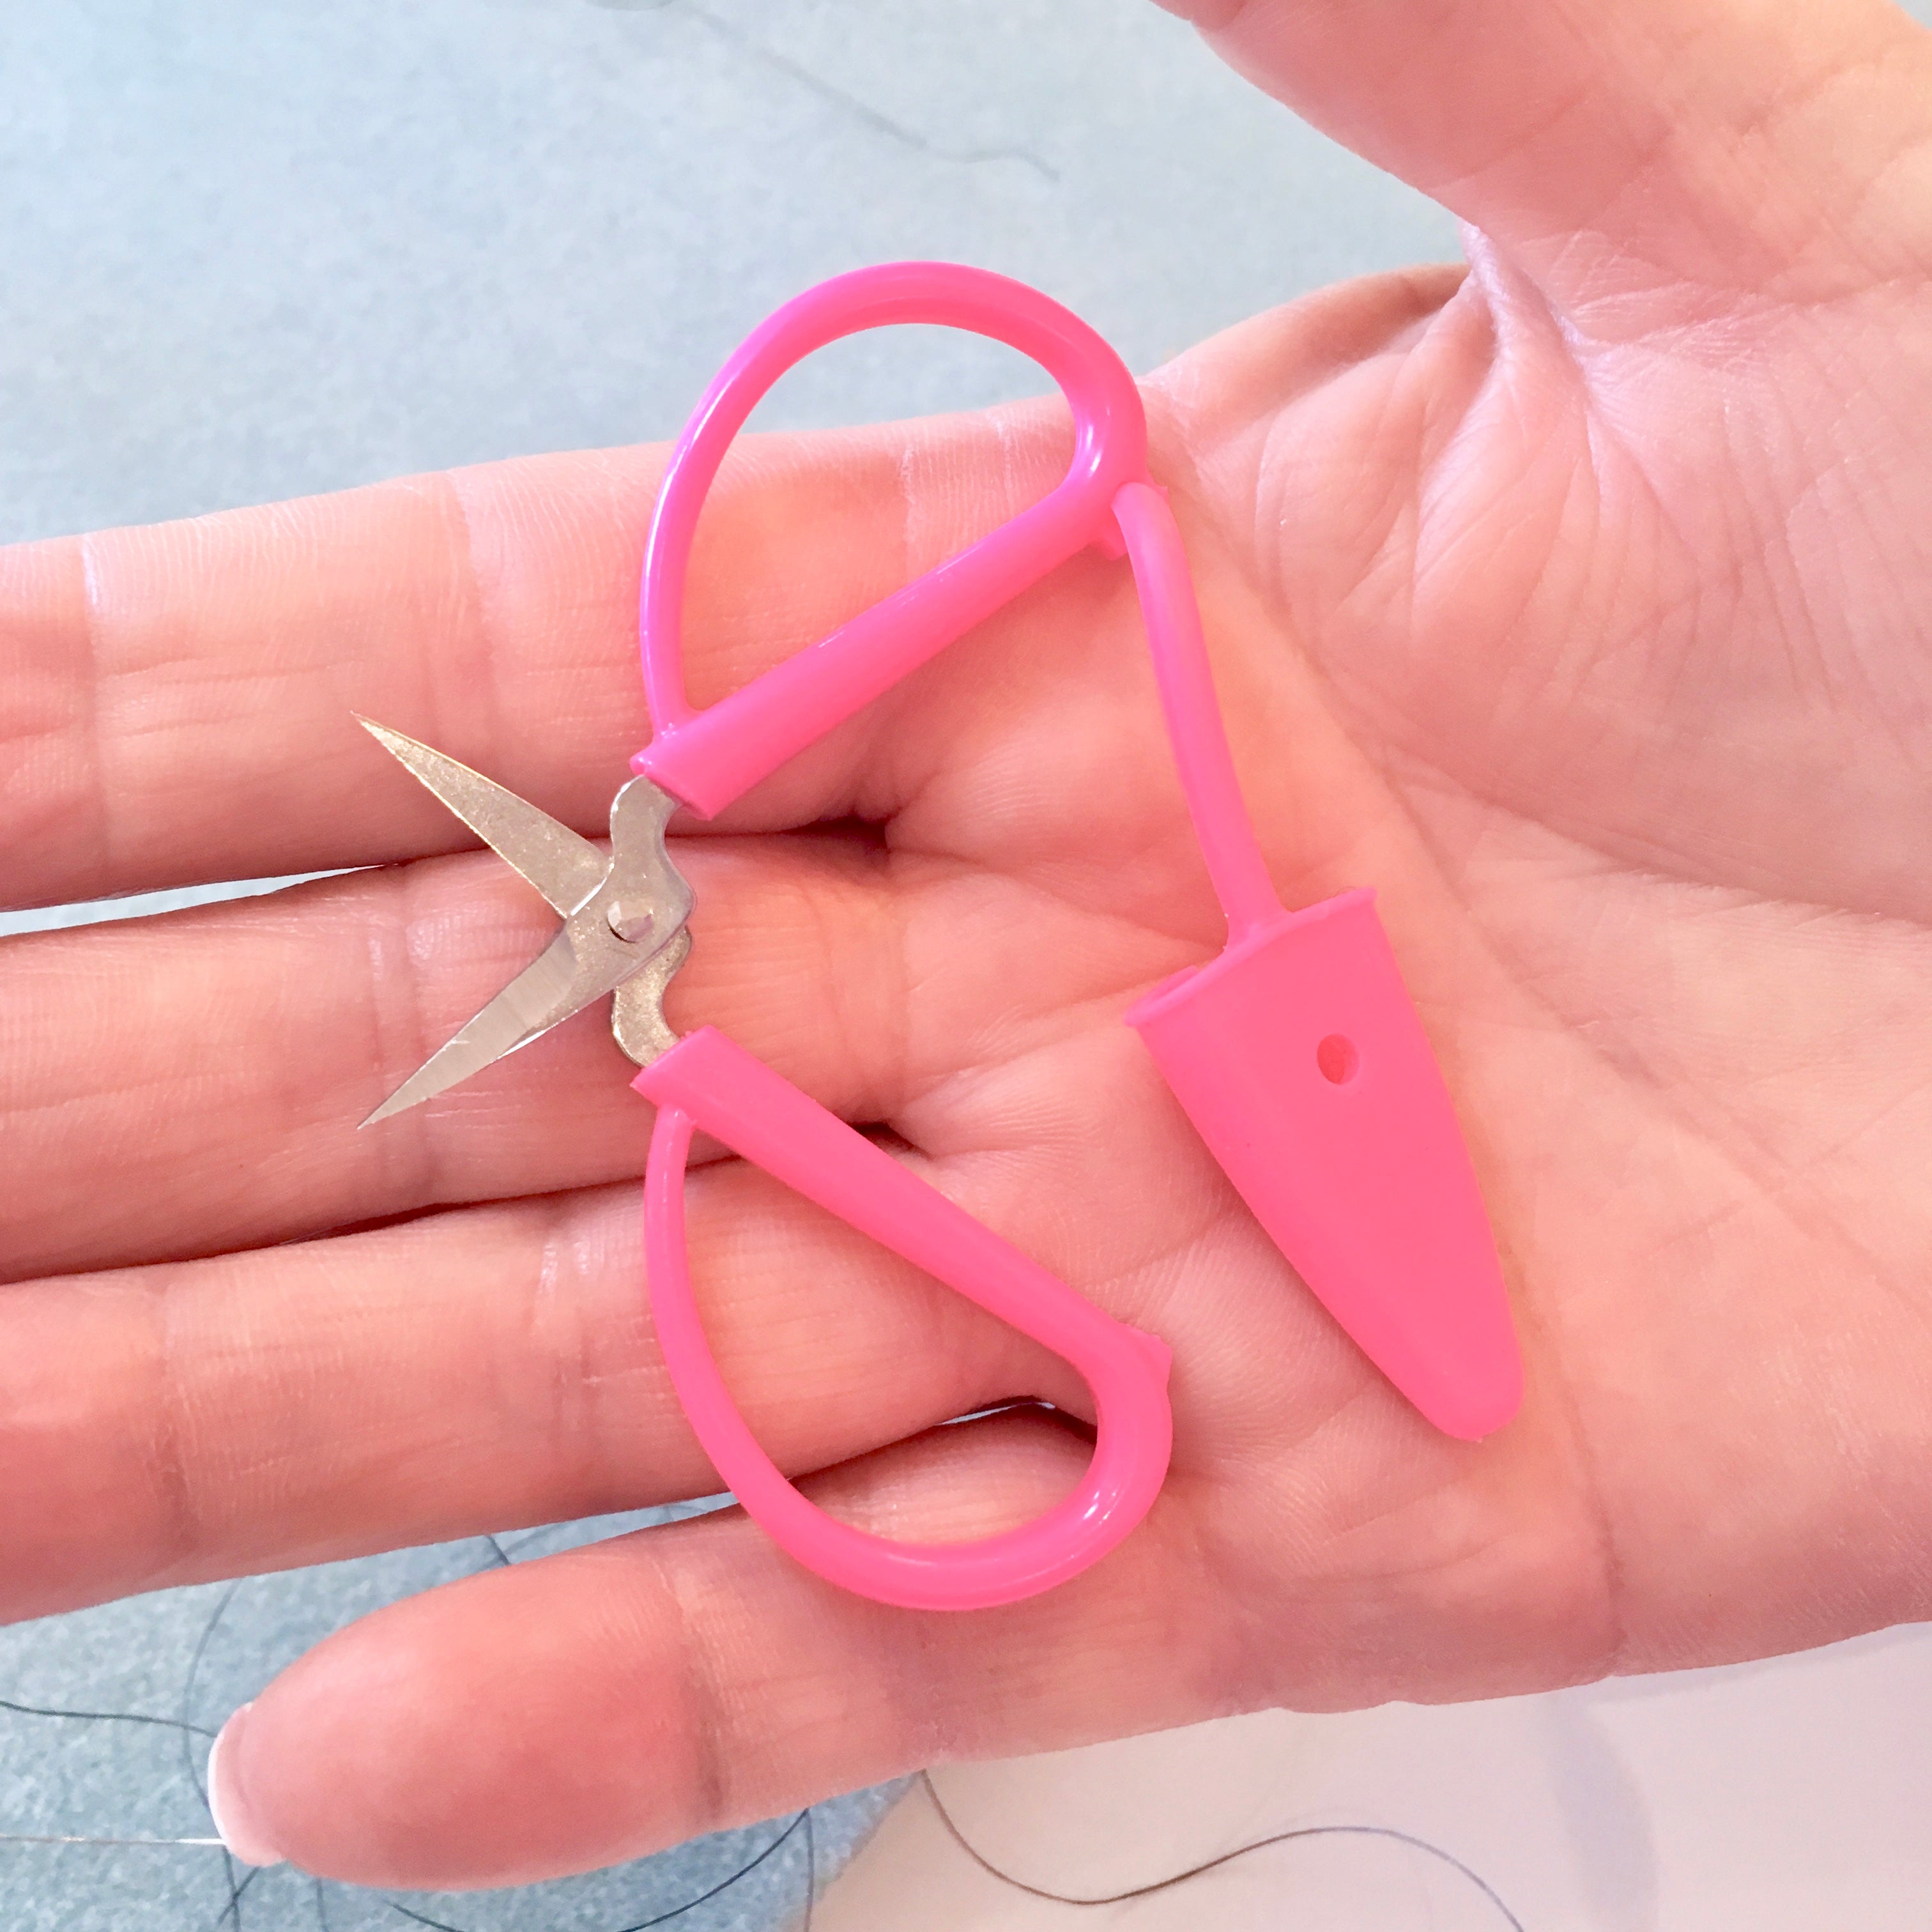 Tiny Travel Scissors, Super Snip Scissors